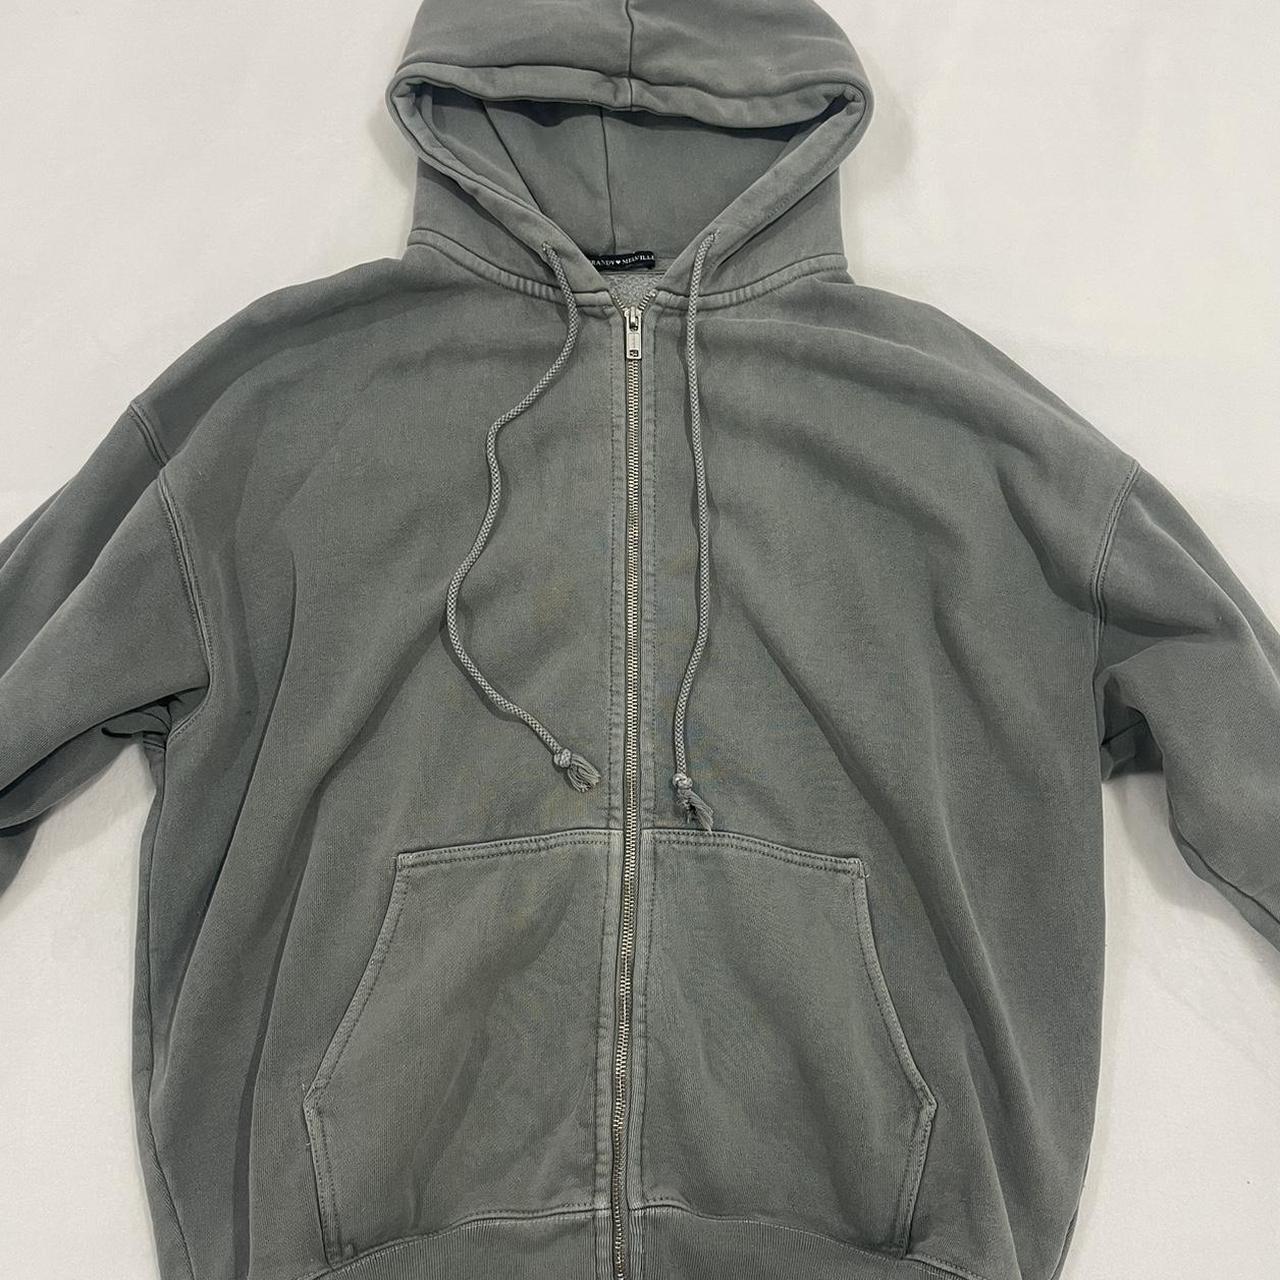 Brandy Melville dark grey zip-up hoodie jacket. Fits - Depop